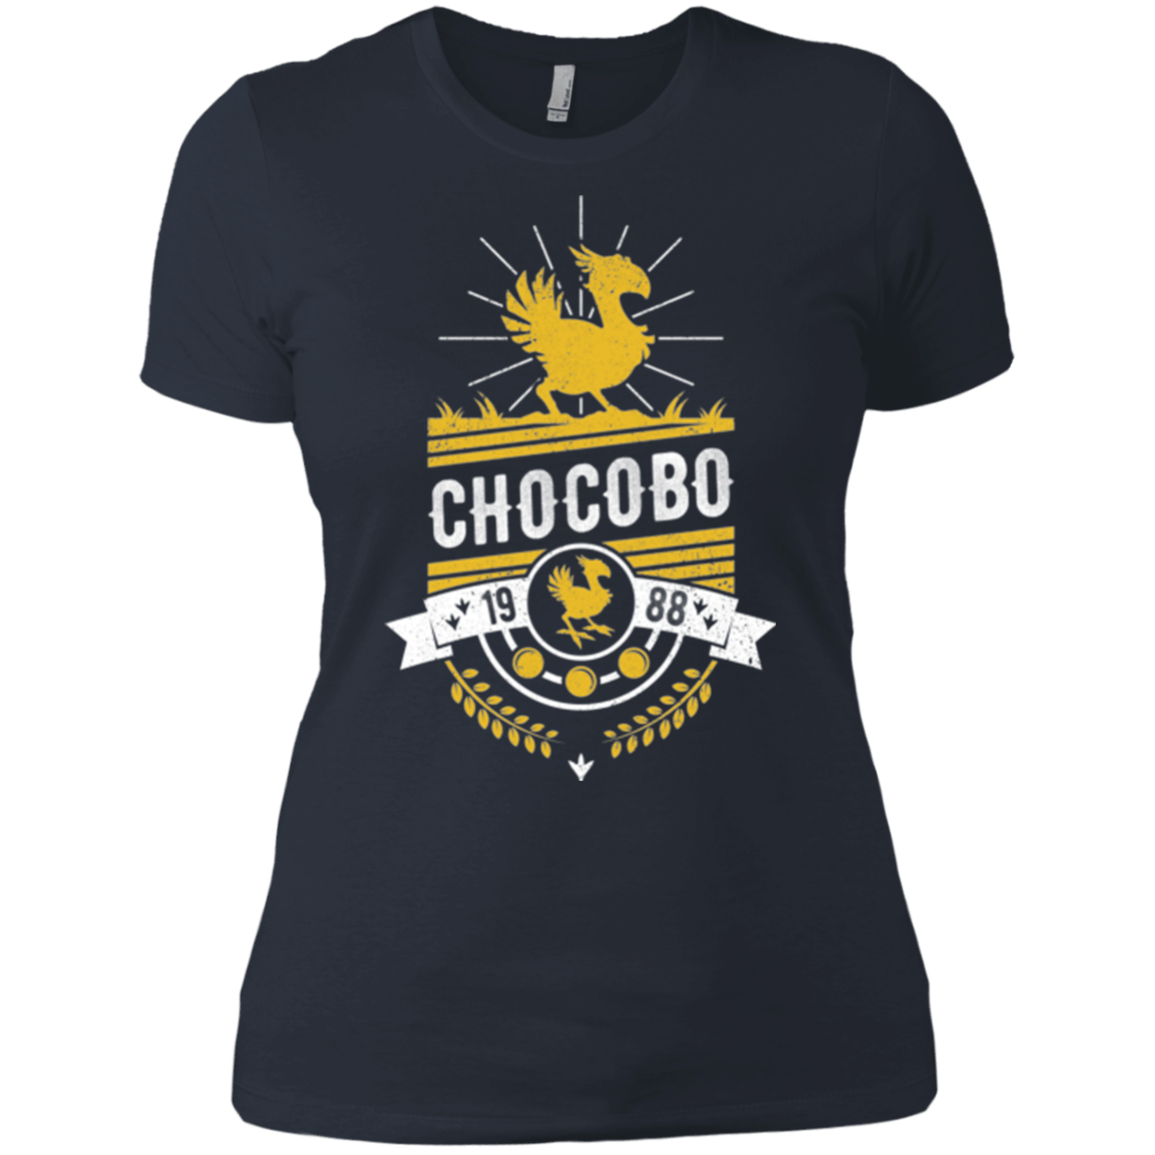 T-Shirts Indigo / X-Small Wark Women's Premium T-Shirt